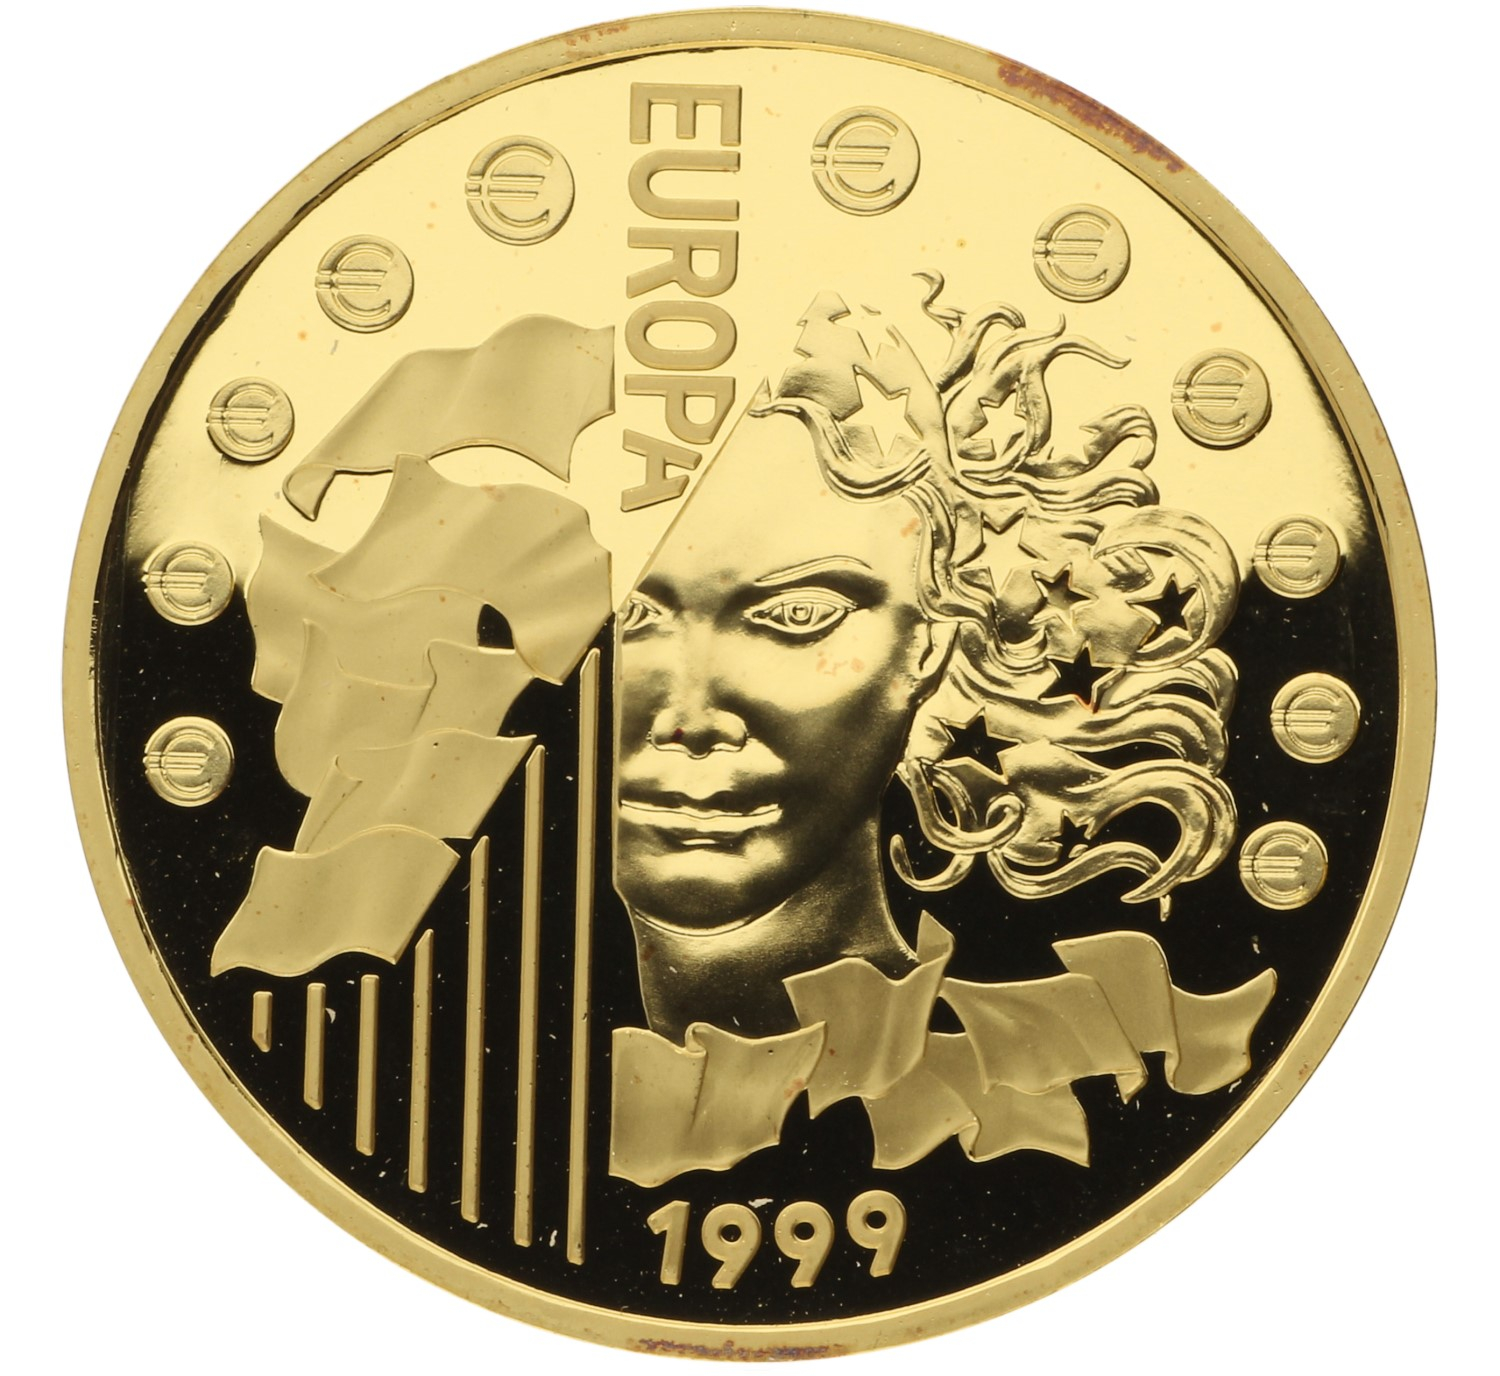 655.957 Francs - France - 1999